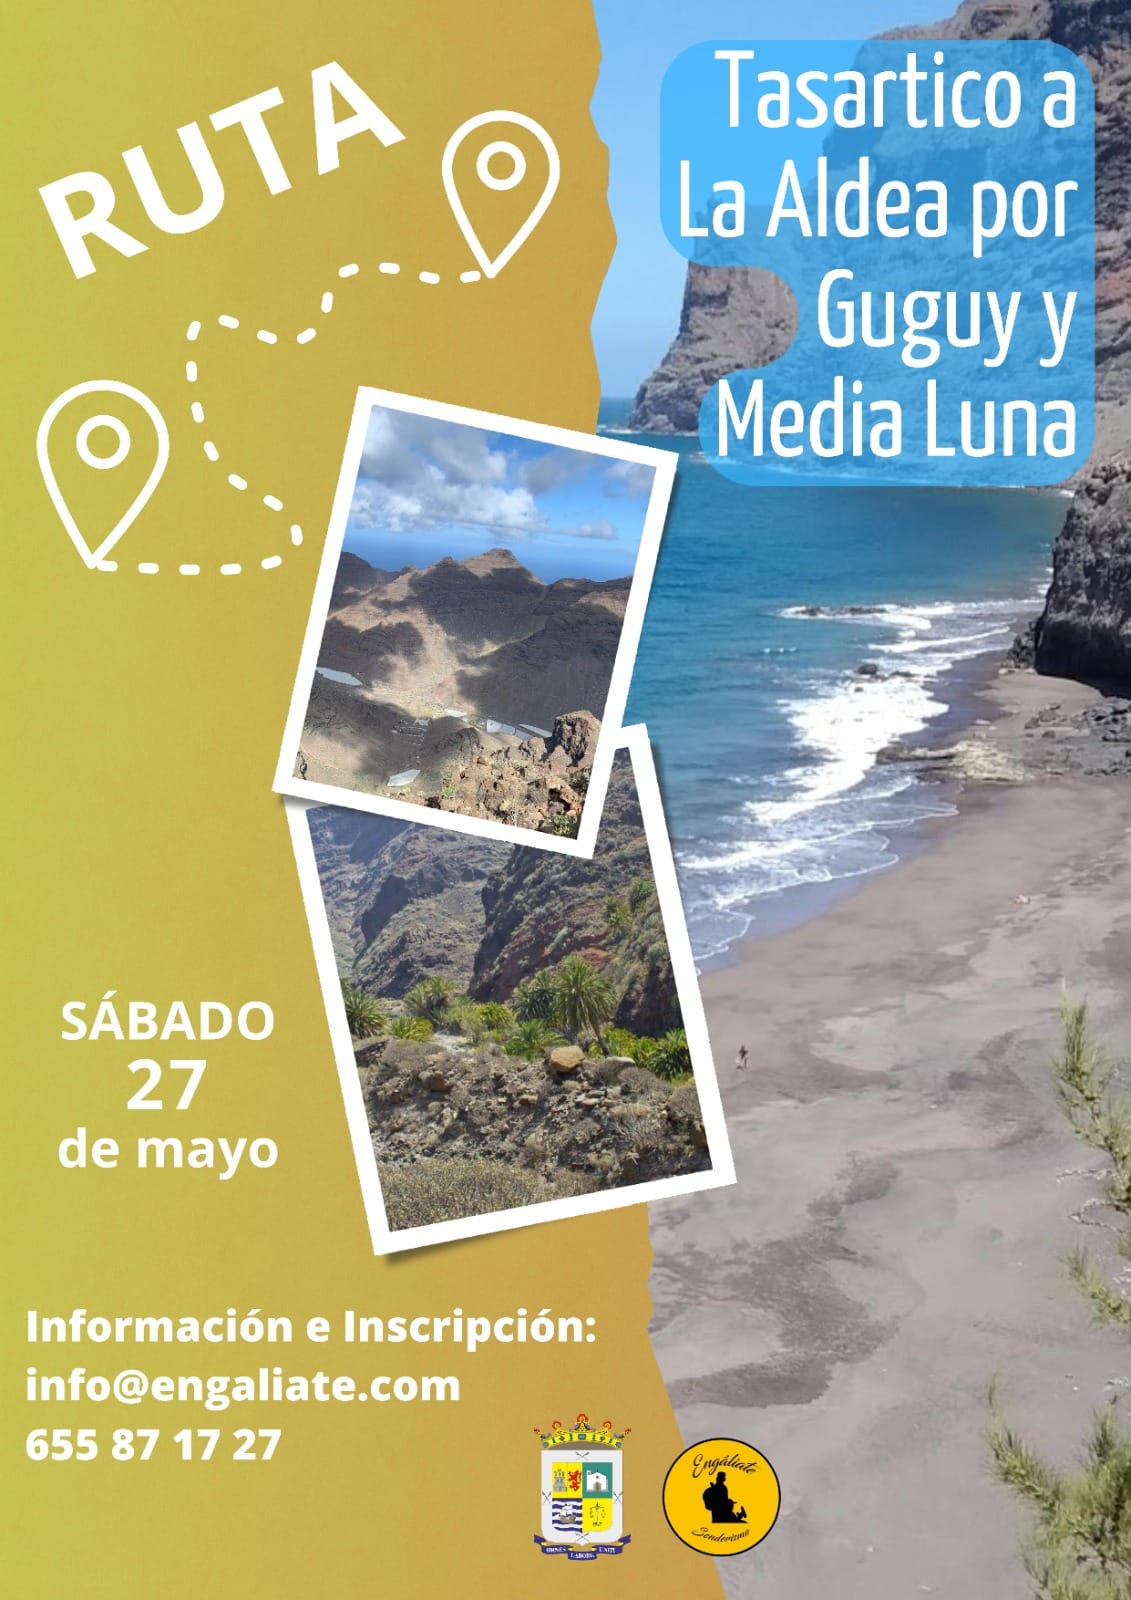 En este momento estás viendo El Ayuntamiento de La Aldea de San Nicolás organiza una ruta de senderismo desde Tasartico a La Aldea por Guguy y Media Luna